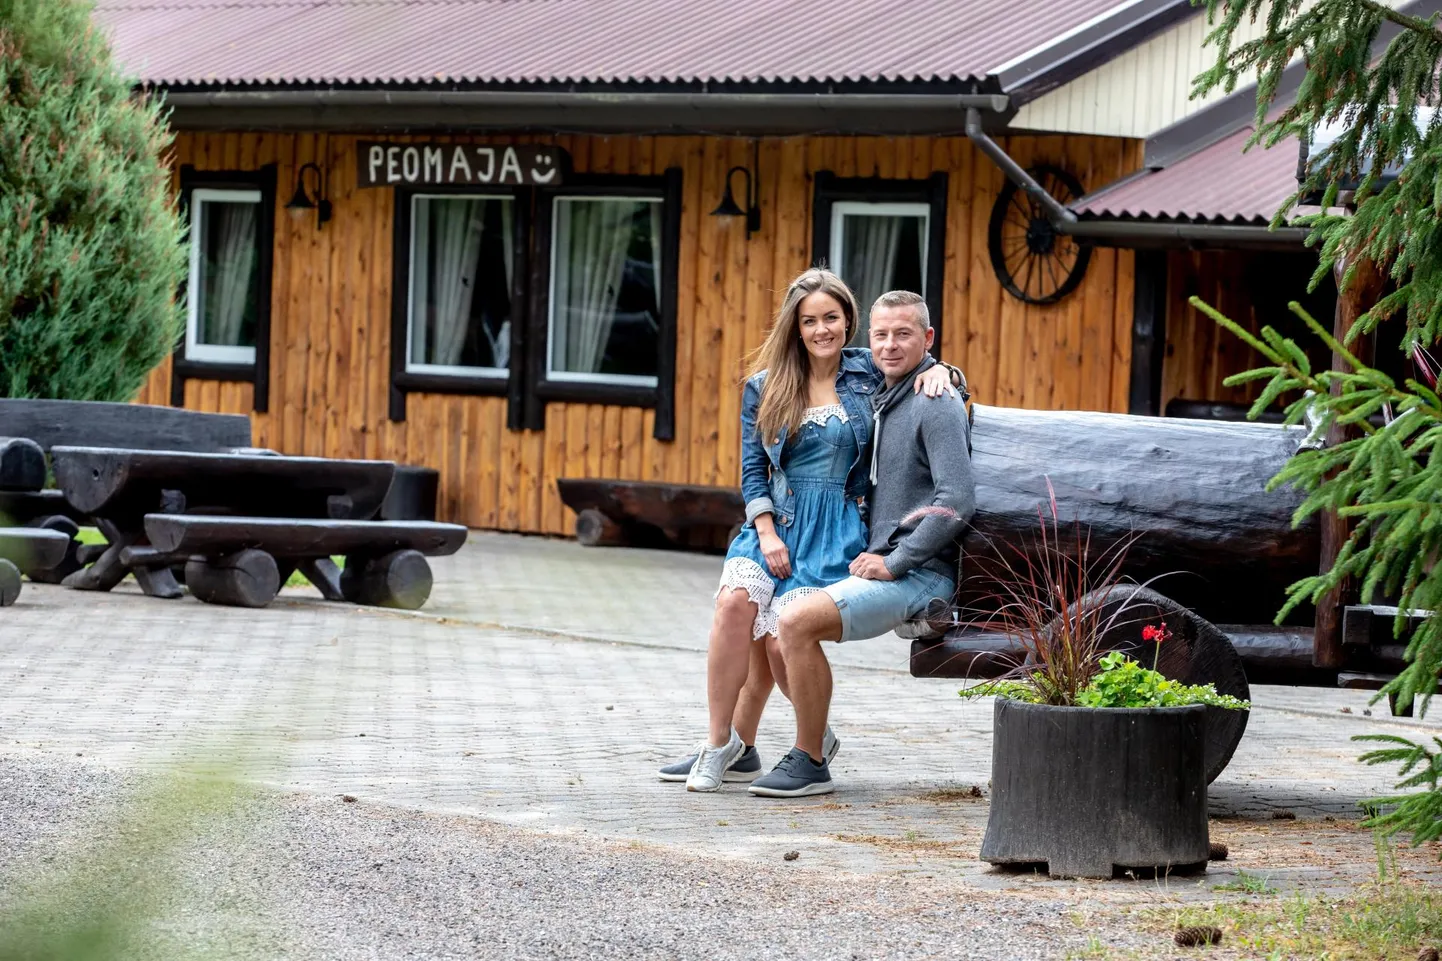 Uueda puhkekeskuse pererahvas Kati Uus-Soomets ja Mairo Soomets võõrustavad igal nädalavahetusel sadu inimesi.